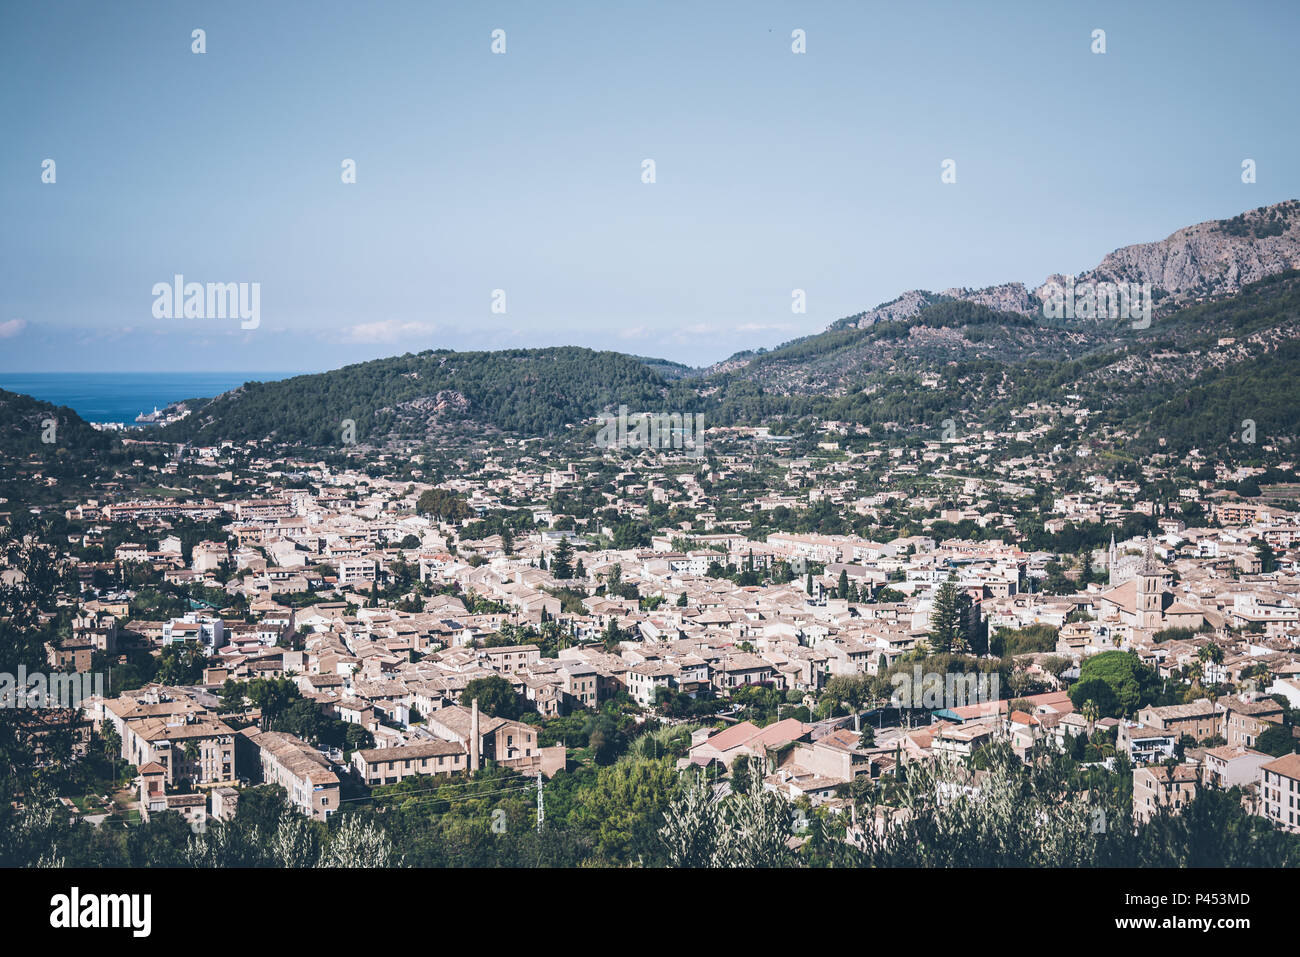 Un alto ángulo de visualización de la ciudad de Sóller, Mallorca Foto de stock